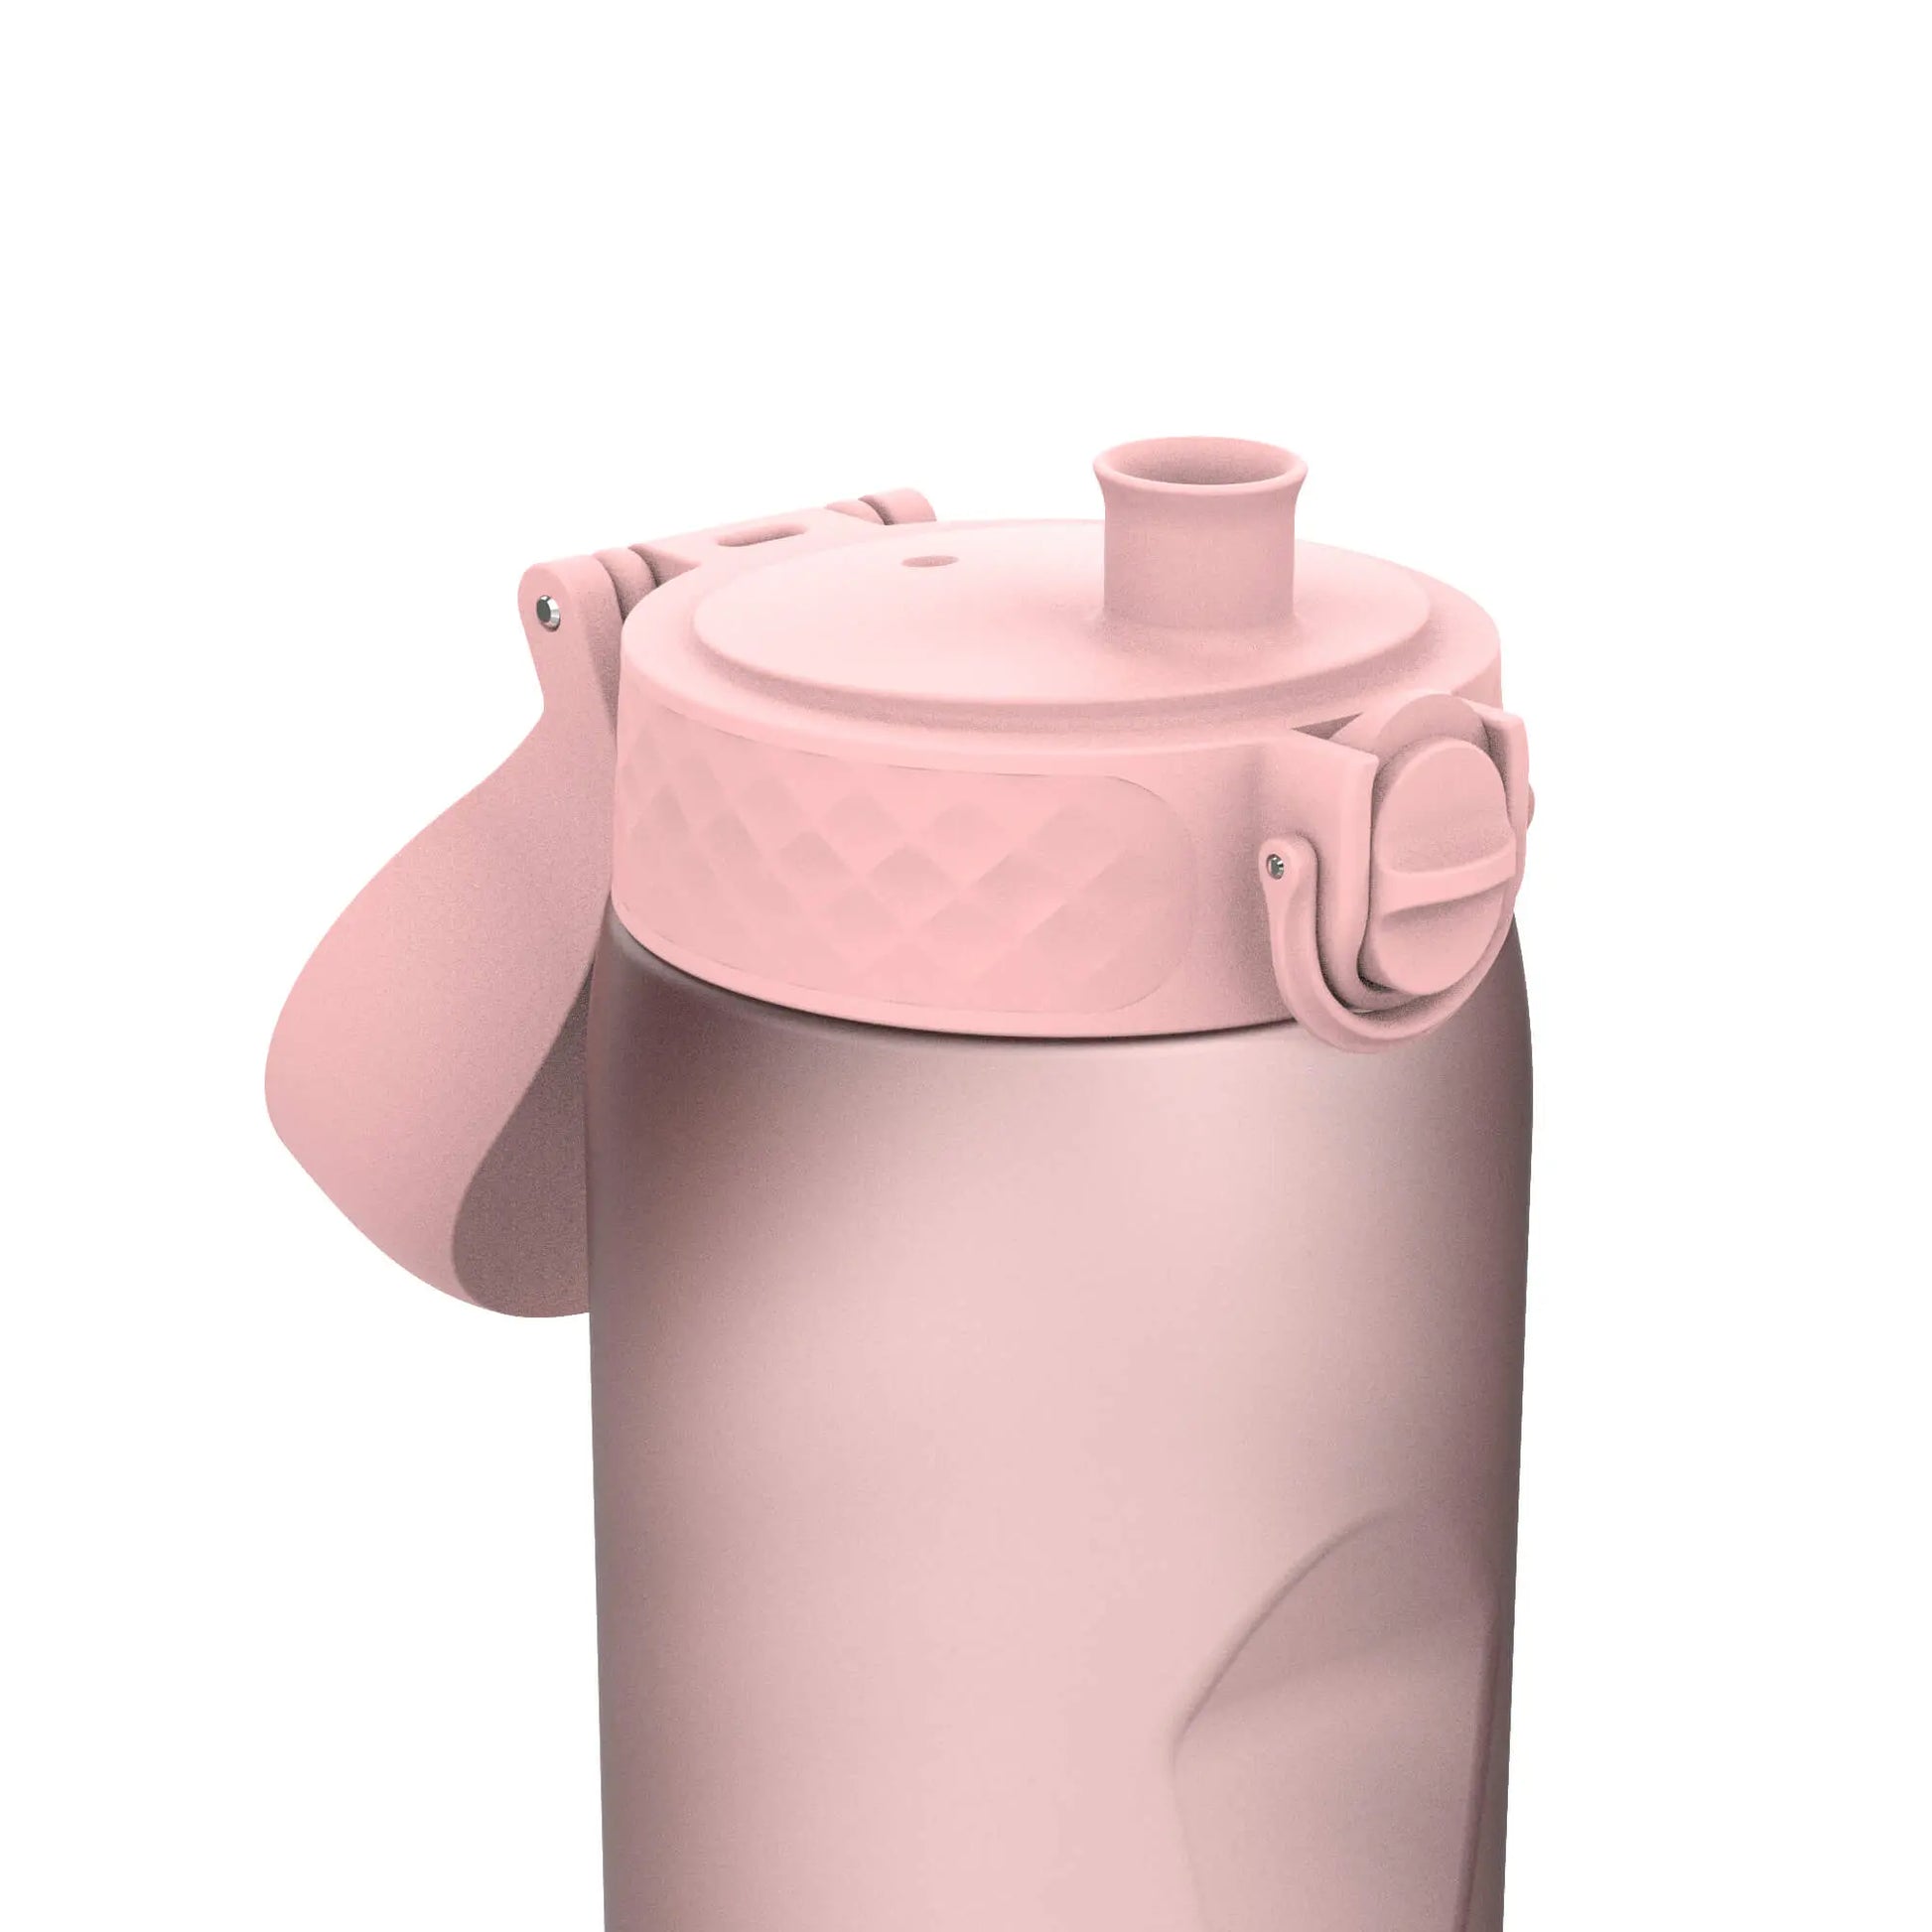 Leak Proof 1 litre Water Bottle, Recyclon™, Rose Quartz, 1L Ion8